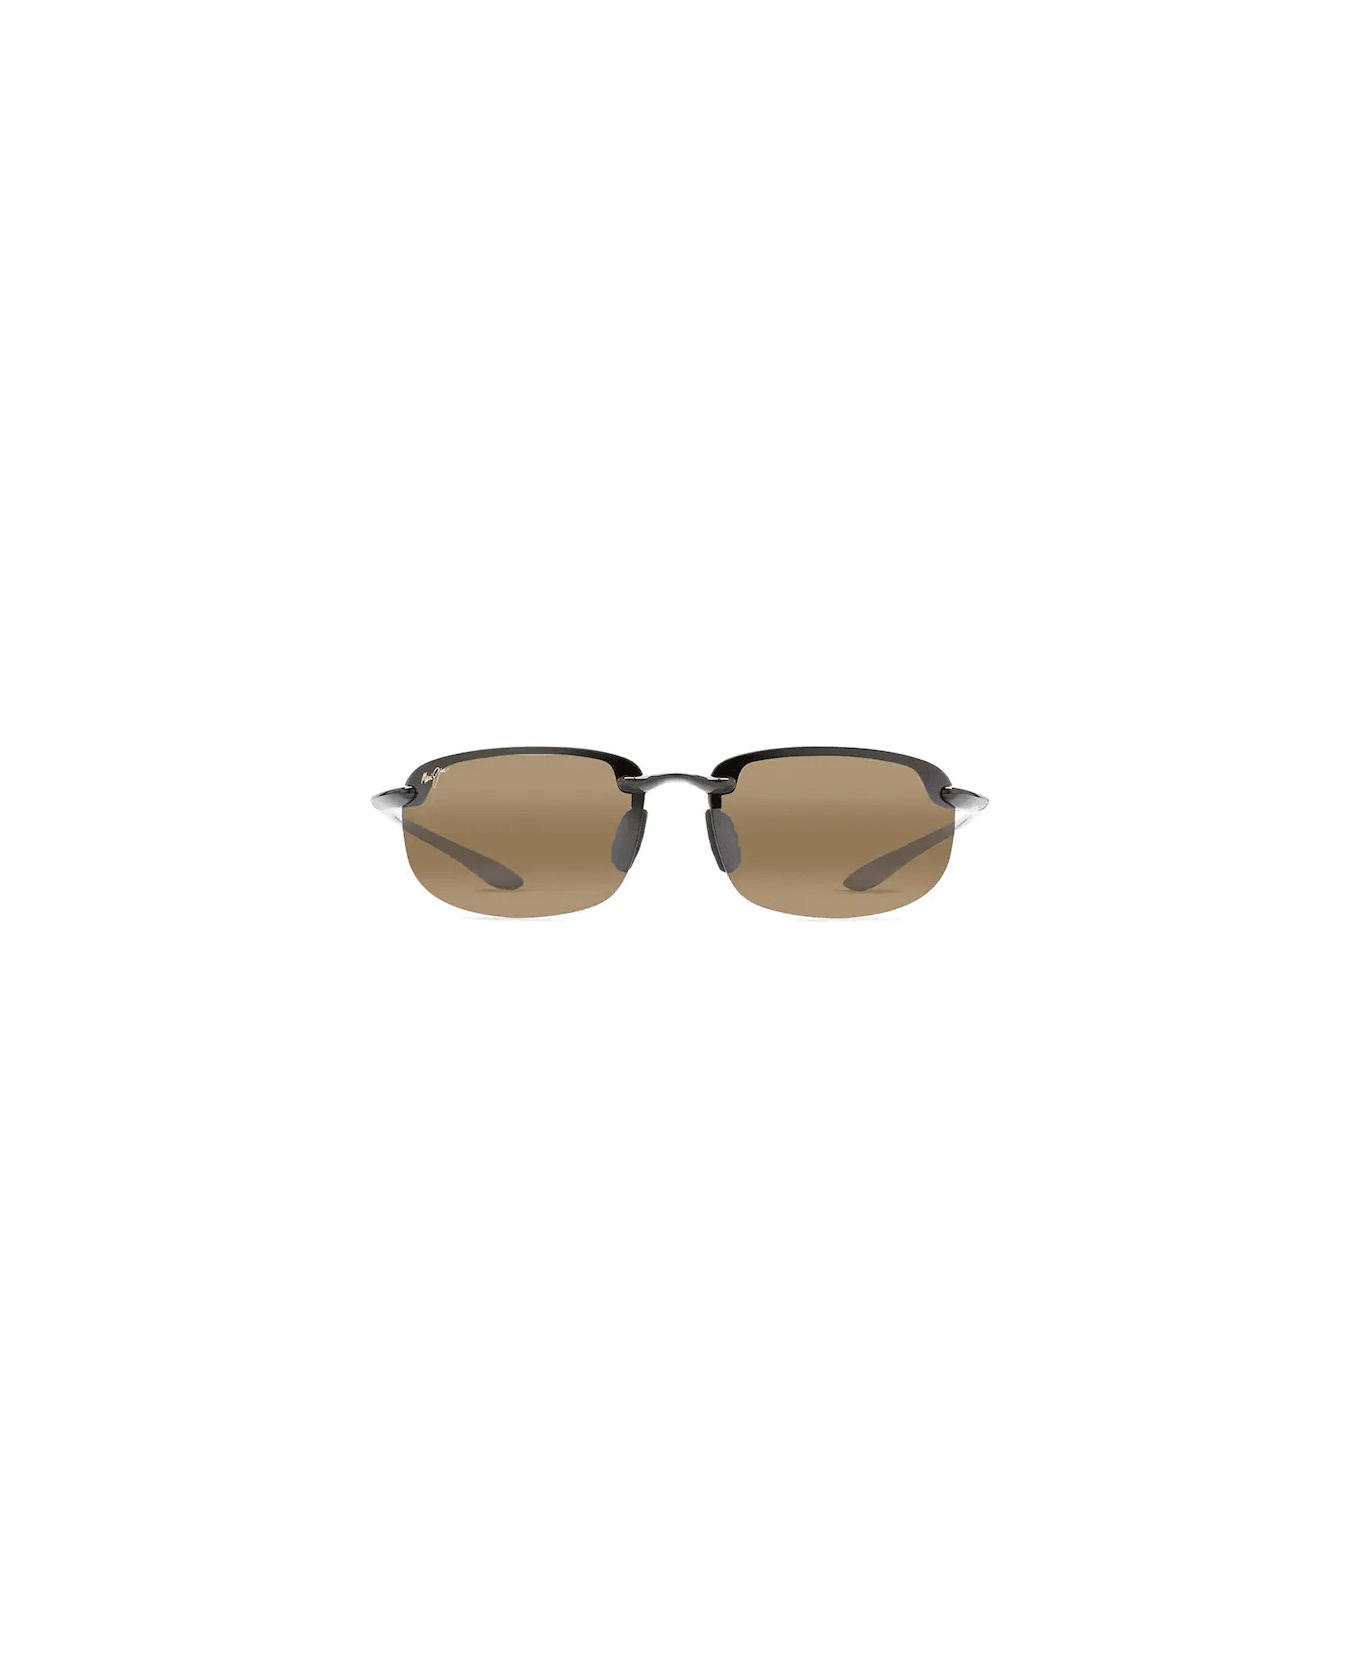 Maui Jim Ho'okipa H407 02 Sunglasses - Nero lente bronze サングラス